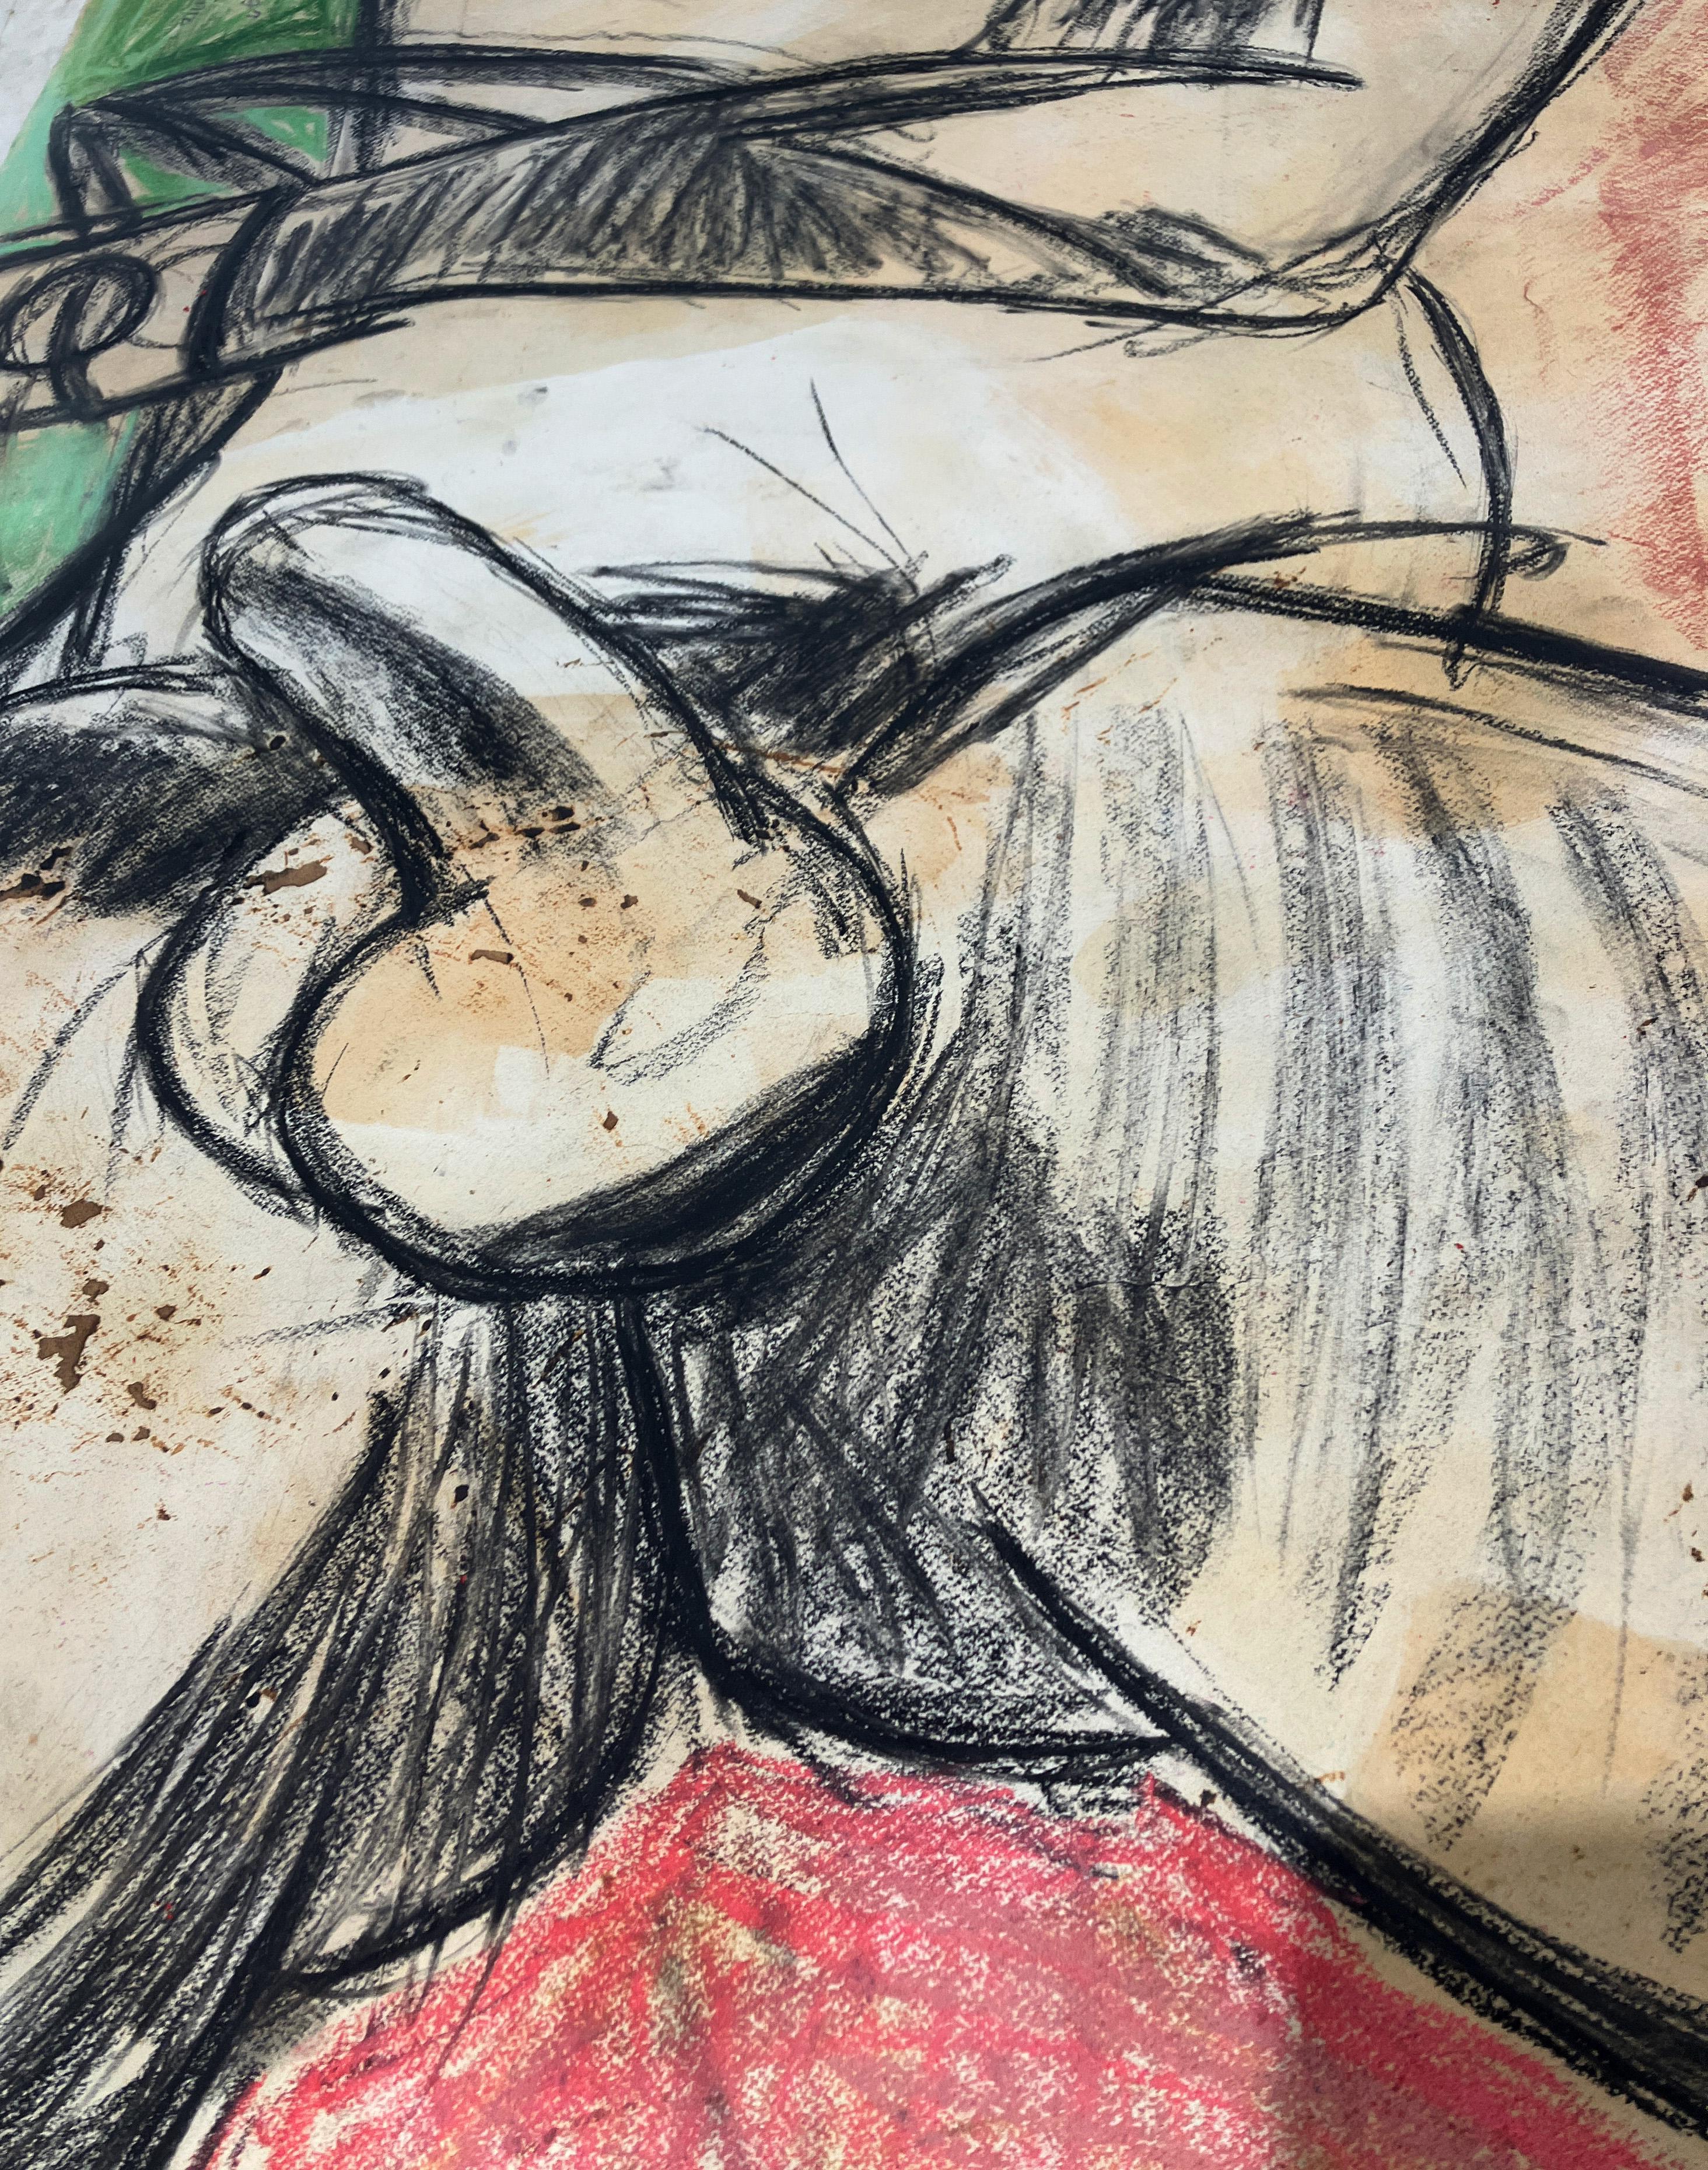 Desnudo con medias, sábado 4 de junio, 2016 von Celso Castro-Daza
Pastell und Buntstift oder Archivpapier
Bildgröße: 59 H. x 40 H. W 

Auf der Rückseite des Bildes: 
Portrait figurativ in Bleistift und Aquarell, ohne Datum
Bildgröße: 40 H. x 59 H. W